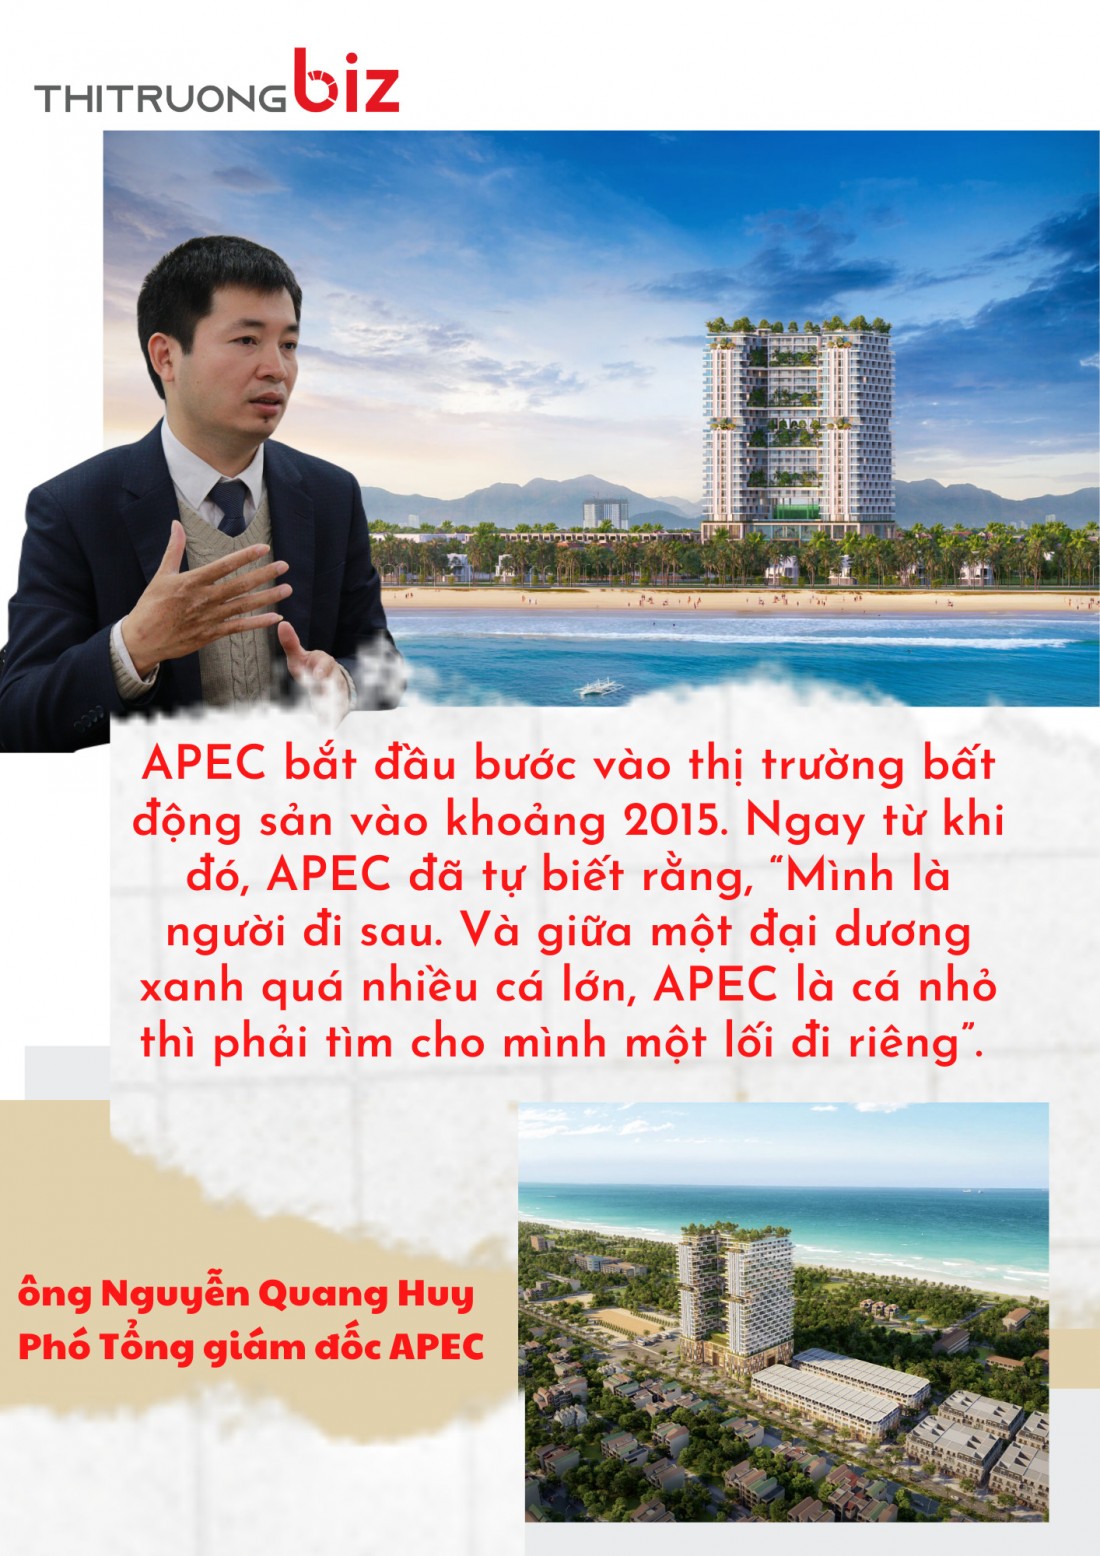 APEC Group – Khơi nguồn cảm hứng cho thị trường BĐS nghỉ dưỡng 5 sao